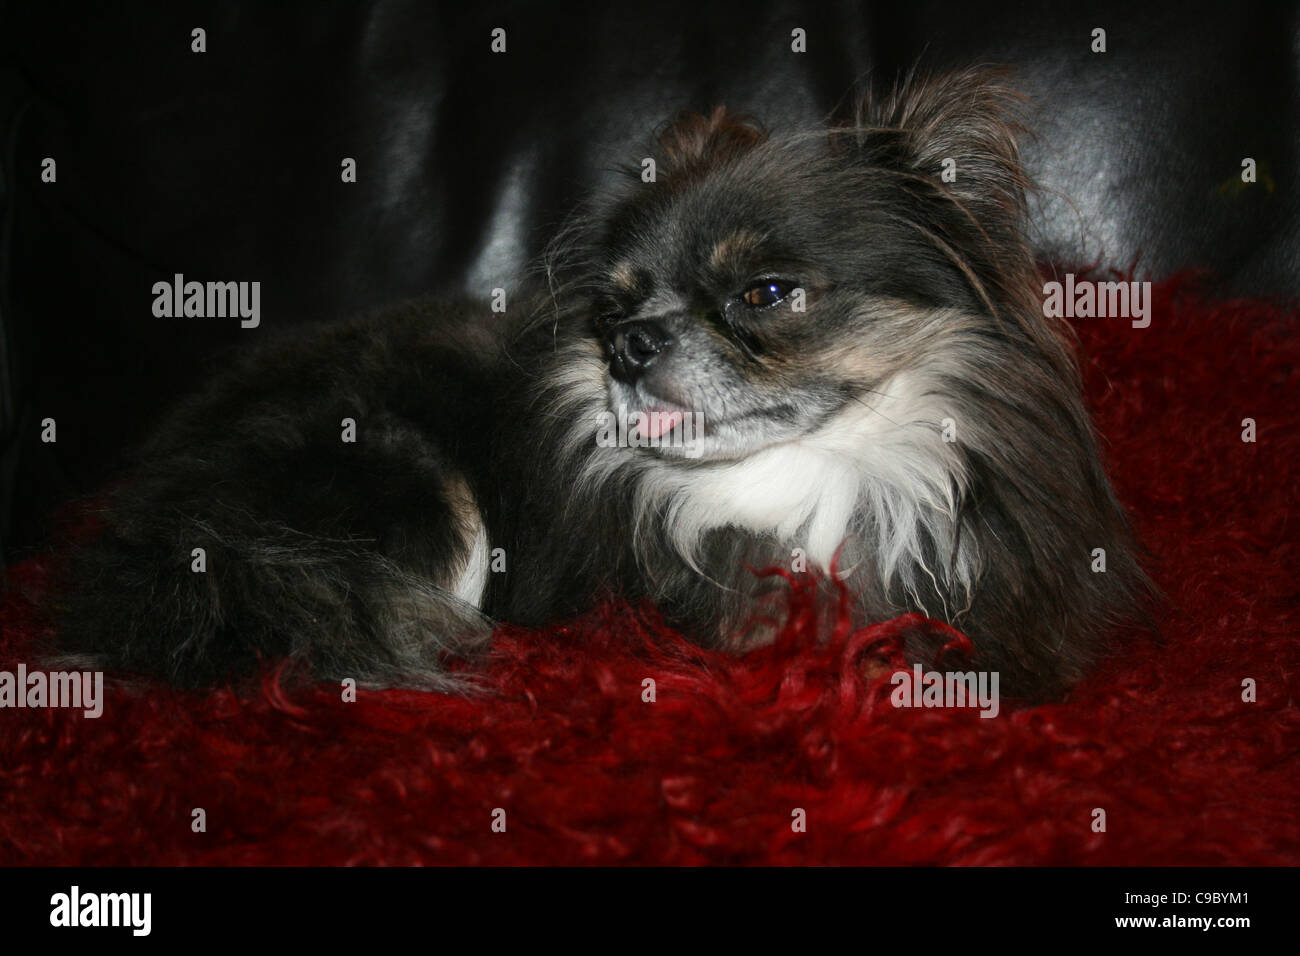 Dunkel braun und weiß Chihuahua oder mexikanische Hund ruht auf roten Kissen mit Zunge hängt heraus. Stockfoto